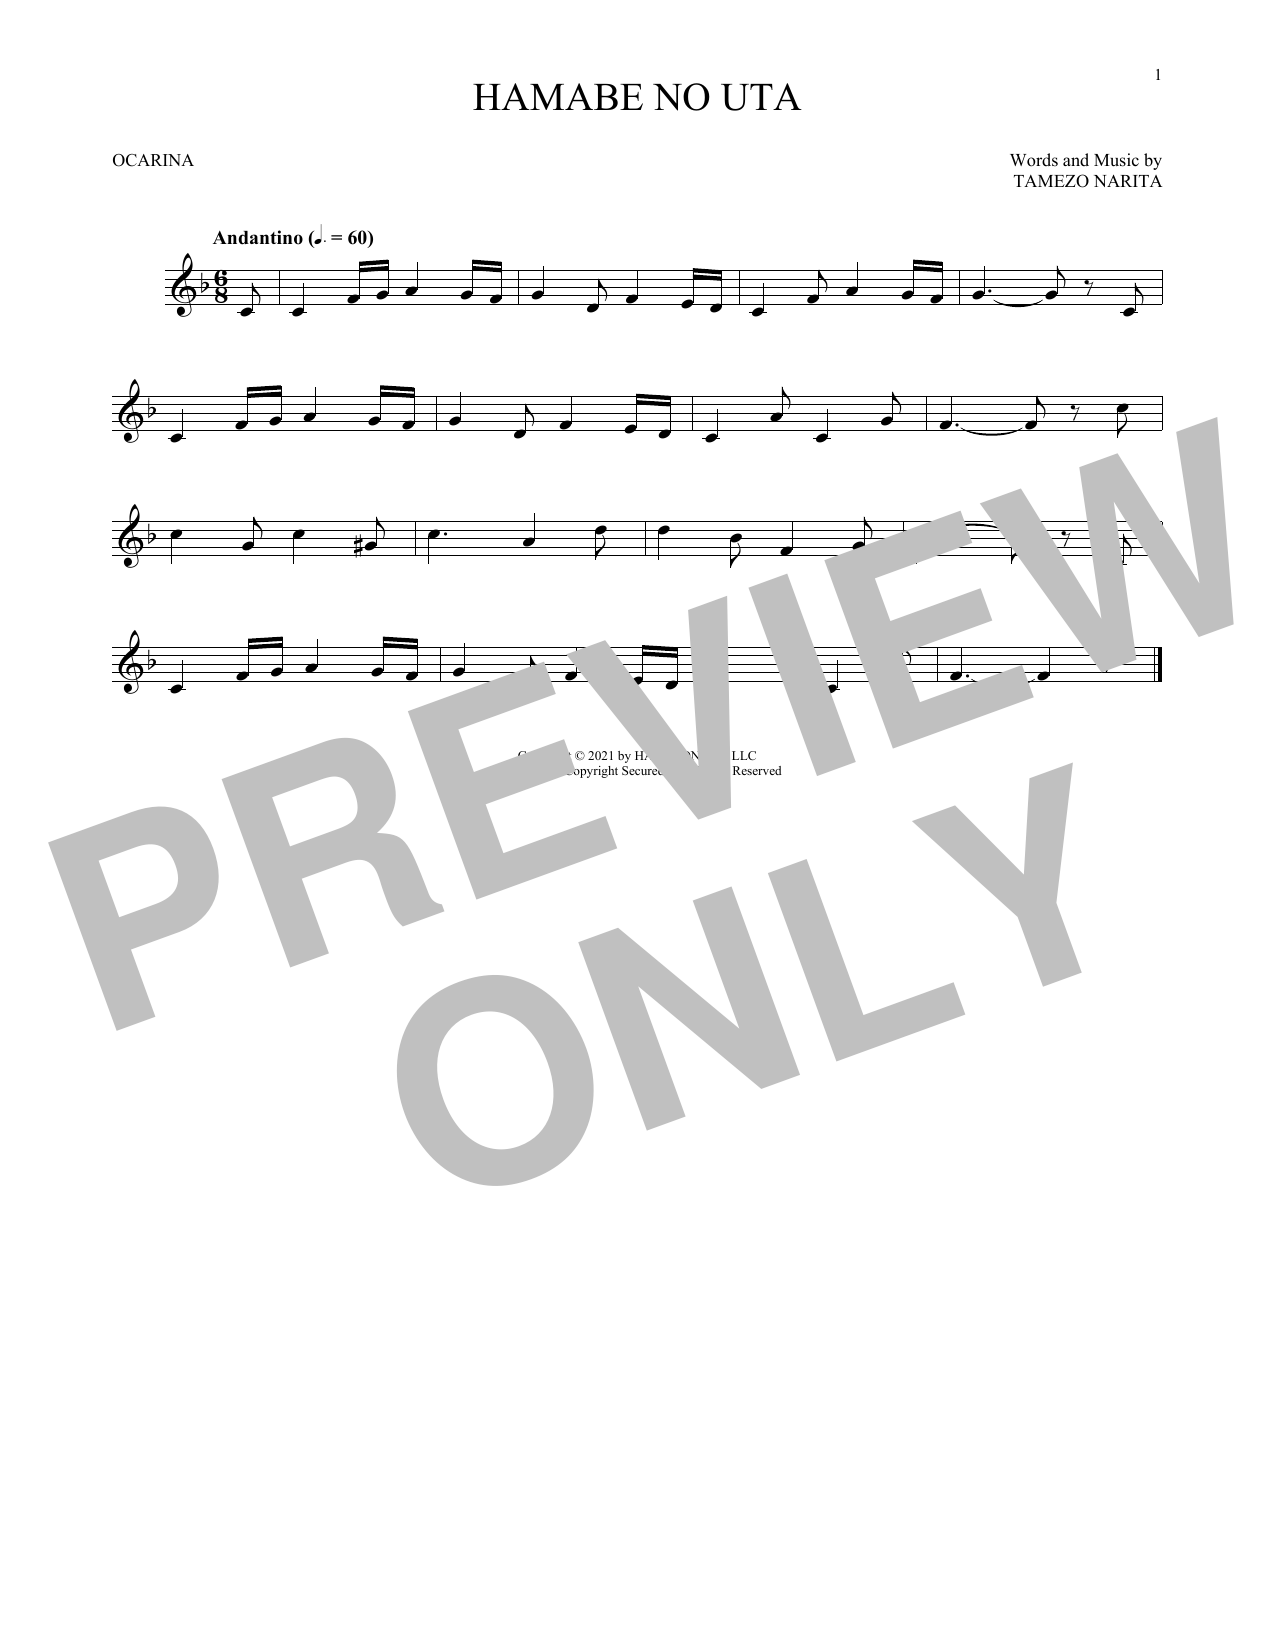 Tamezo Narita Hamabe No Uta Sheet Music Notes & Chords for Ocarina - Download or Print PDF